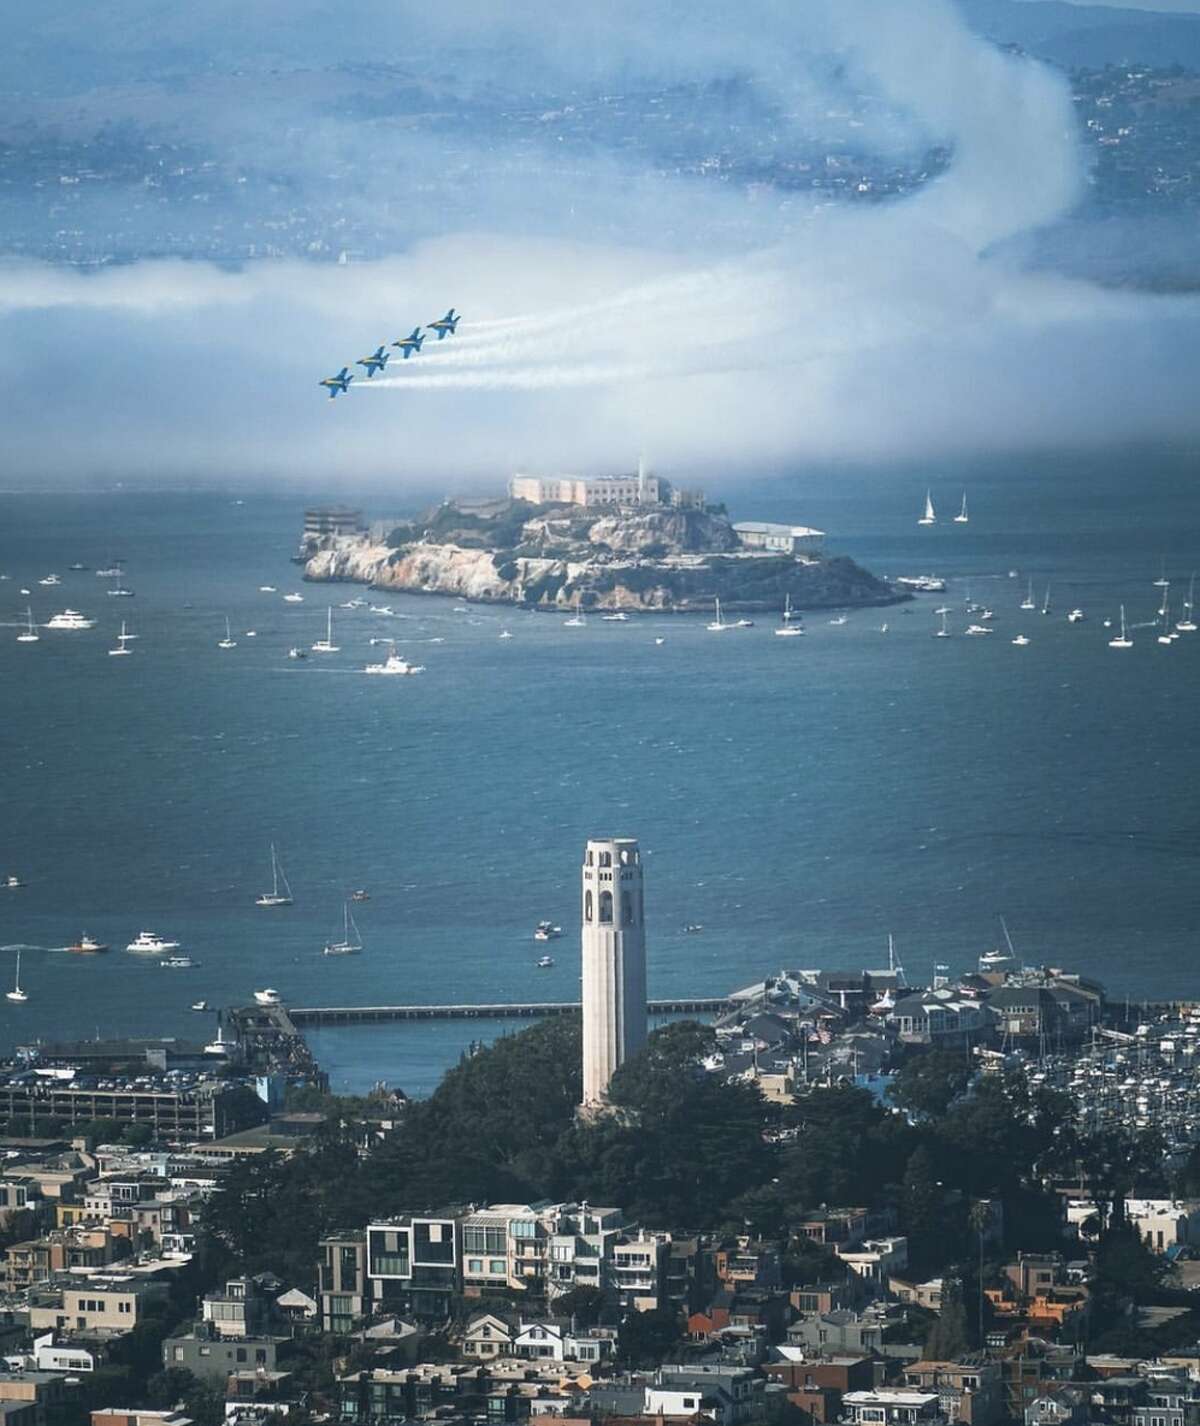 @jennytranphoto capturó a los Blue Angels aún volando alto a pesar de la niebla en el Área de la Bahía de SF.